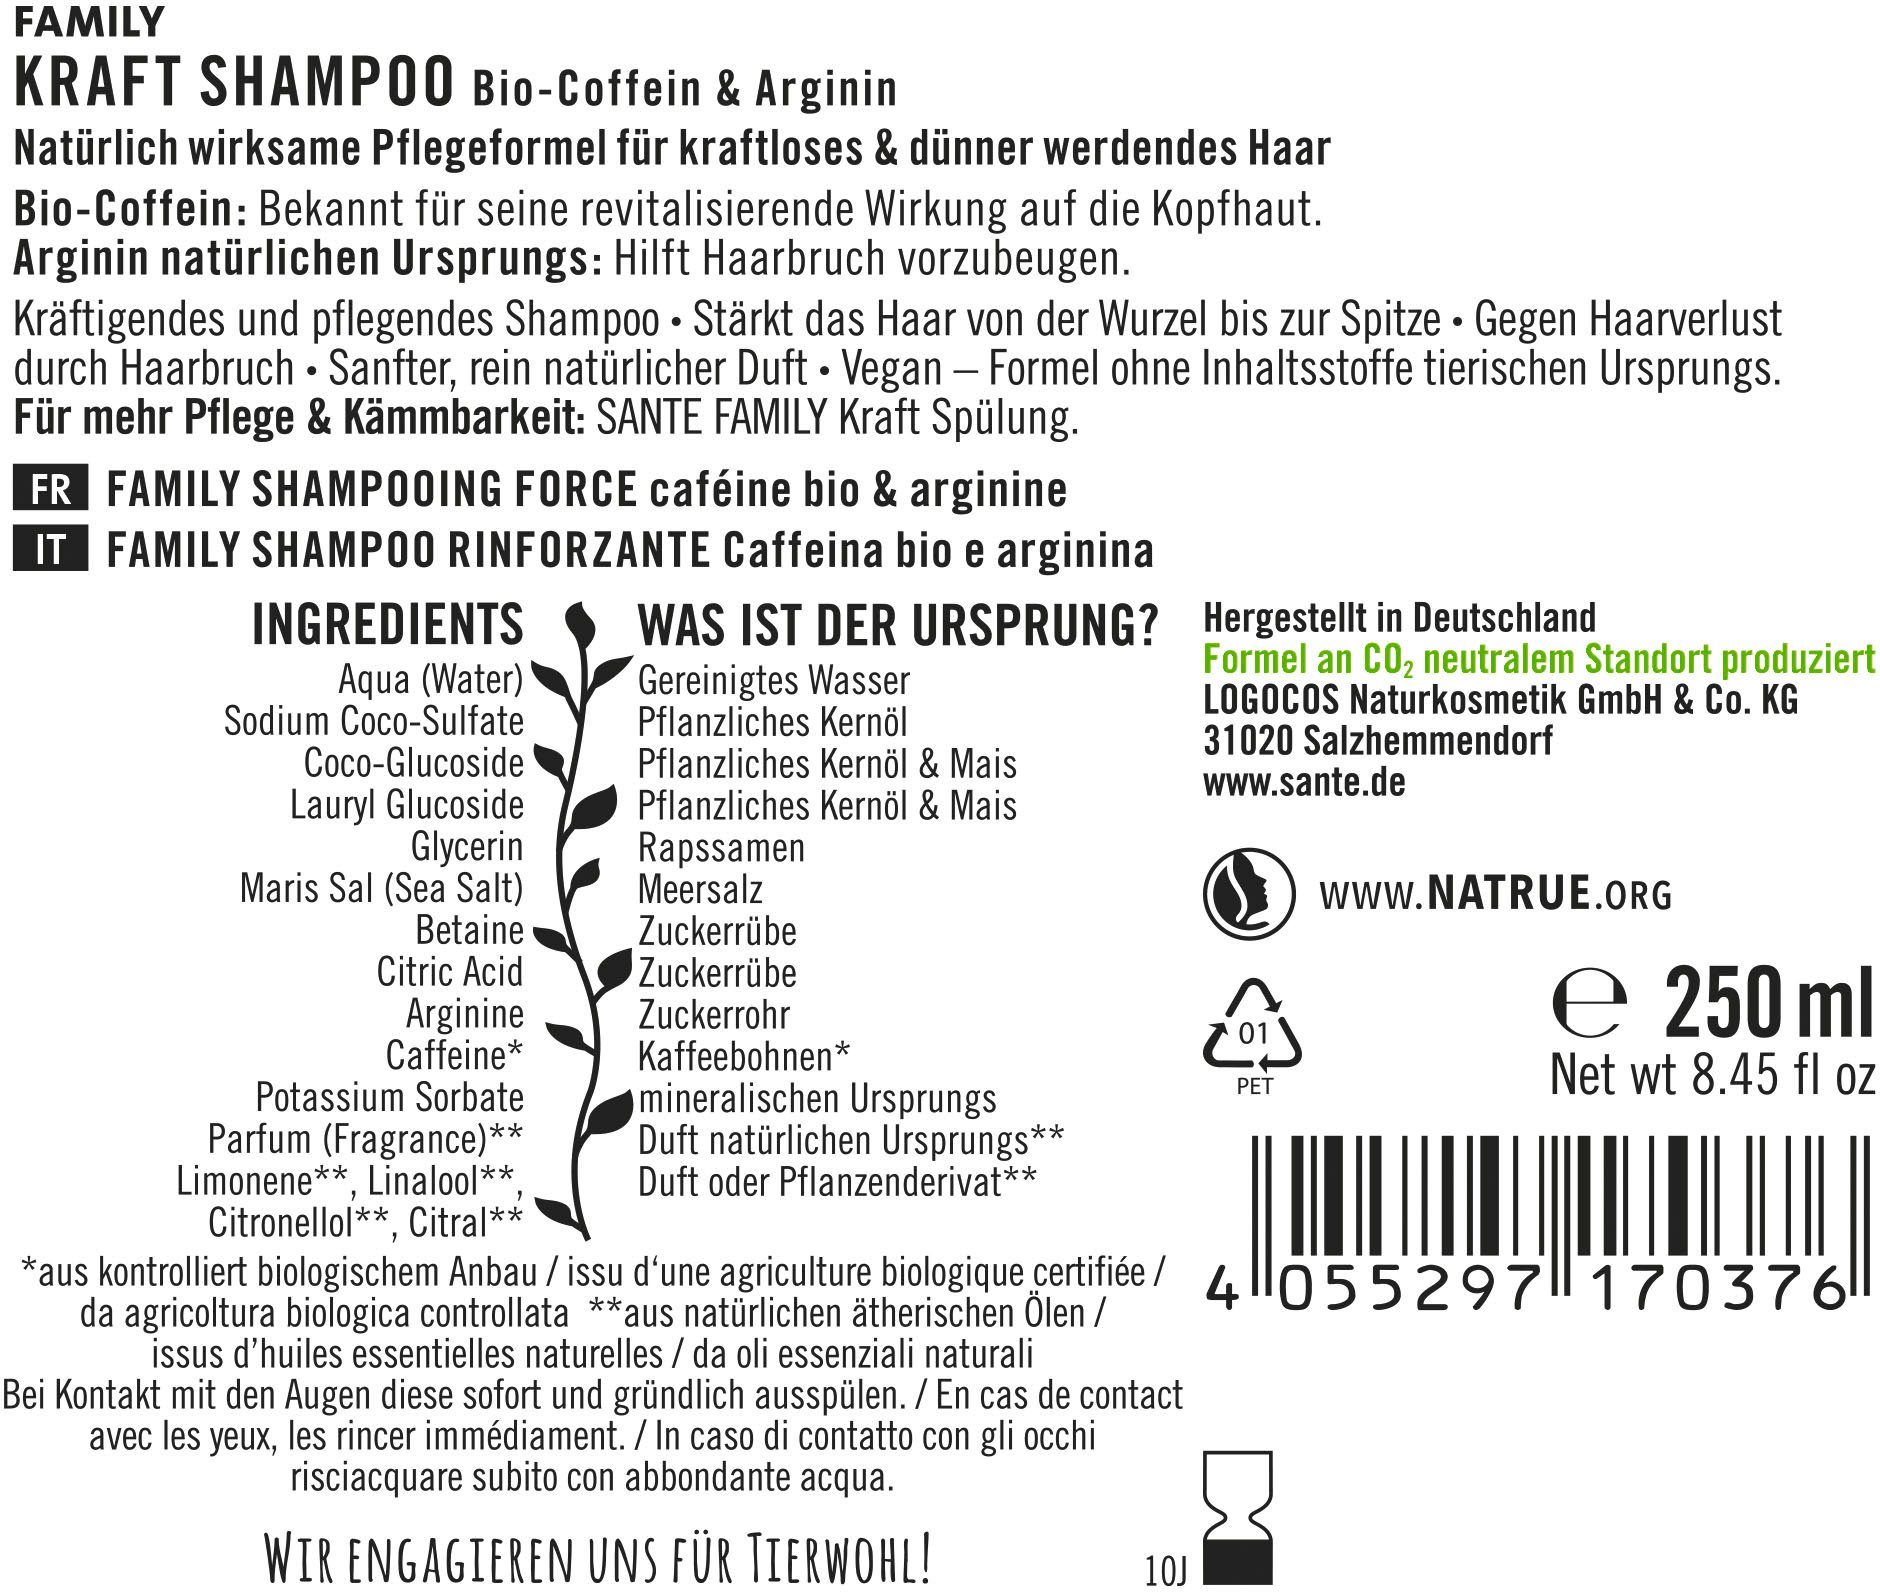 Kraft Haarshampoo Shampoo SANTE